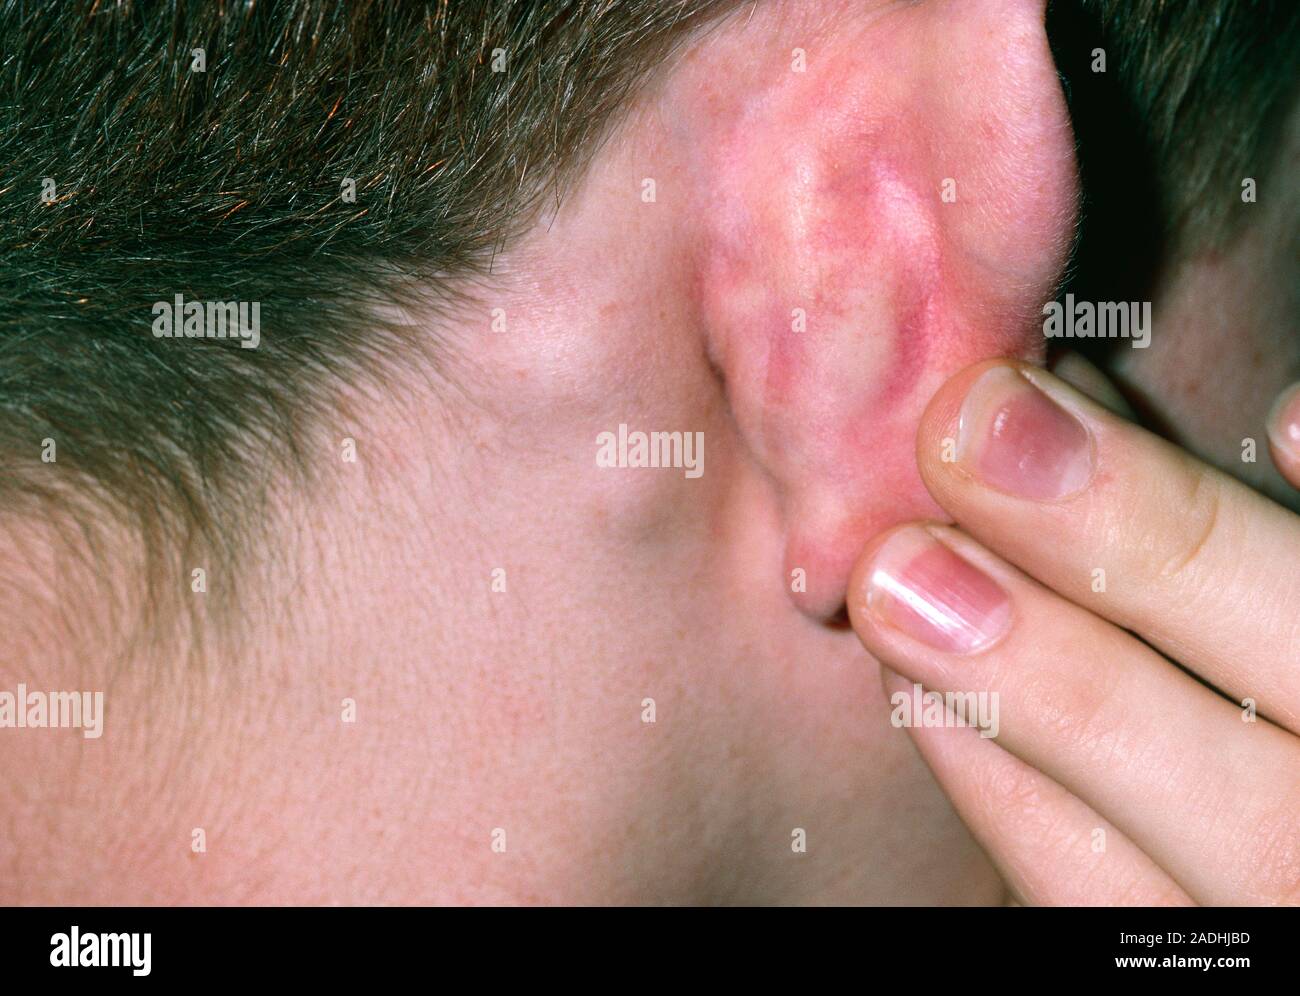 Linfadenopatía. Glándulas inflamadas (linfadenopatía) detrás de la oreja de  un niño. Glándulas inflamadas son causados por la inflamación de los  ganglios linfáticos, los cuales forman parte Fotografía de stock - Alamy